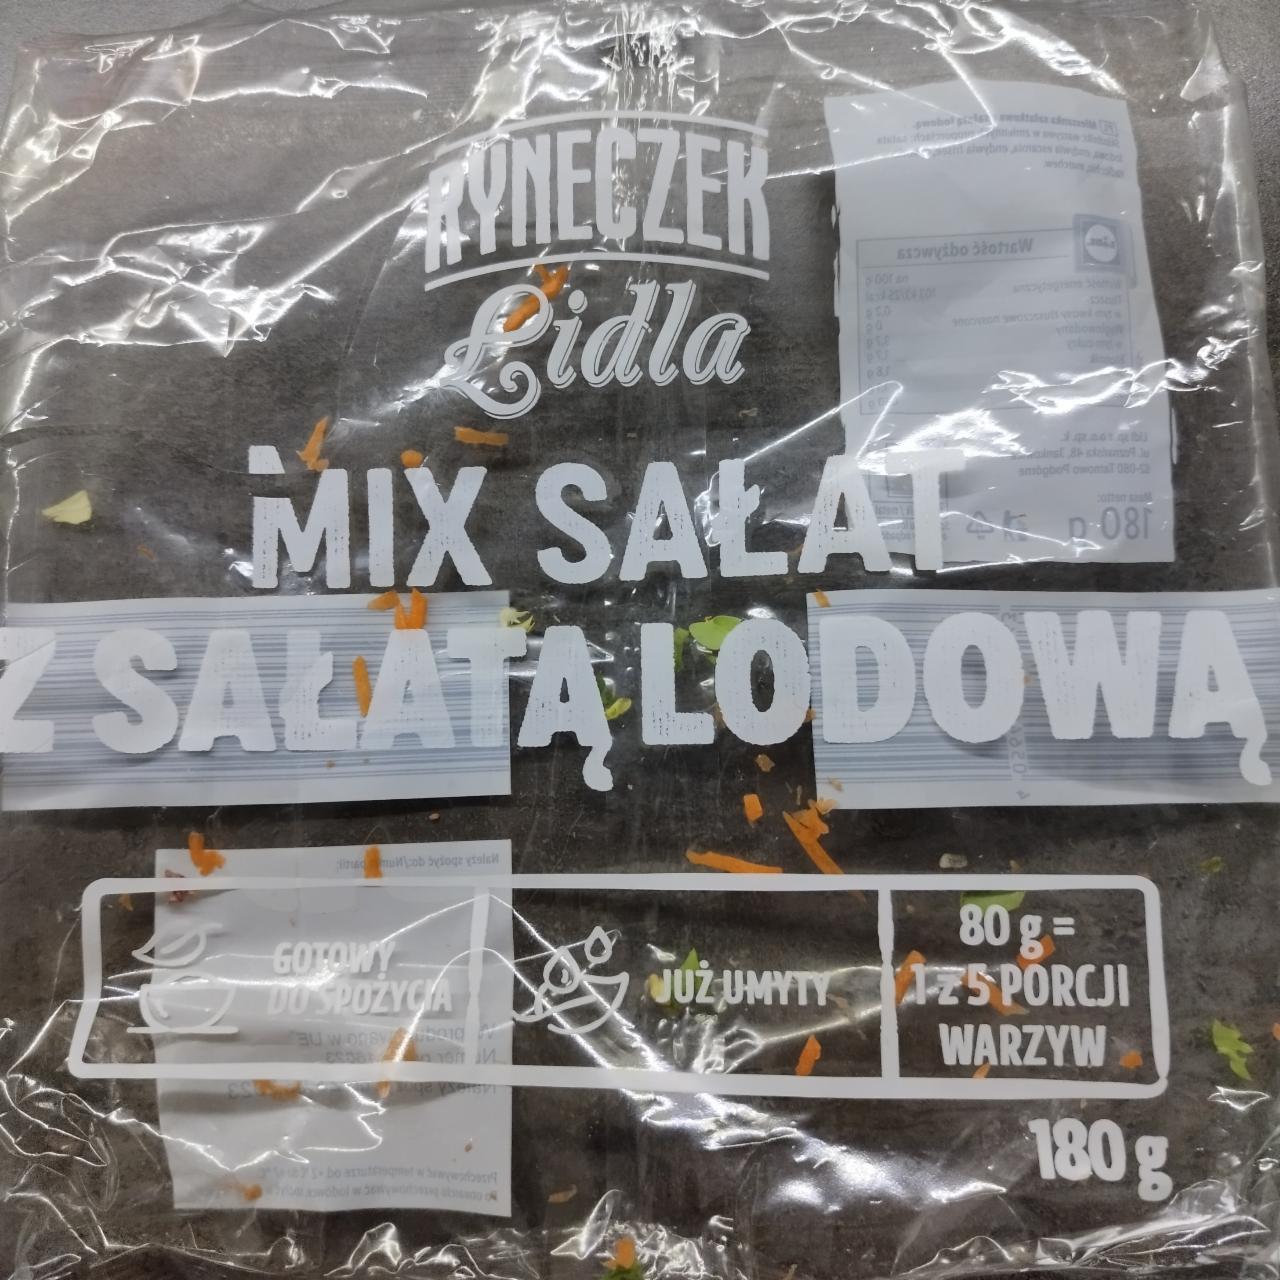 Fotografie - Mix salat salata lodowa Ryneczek Lidla